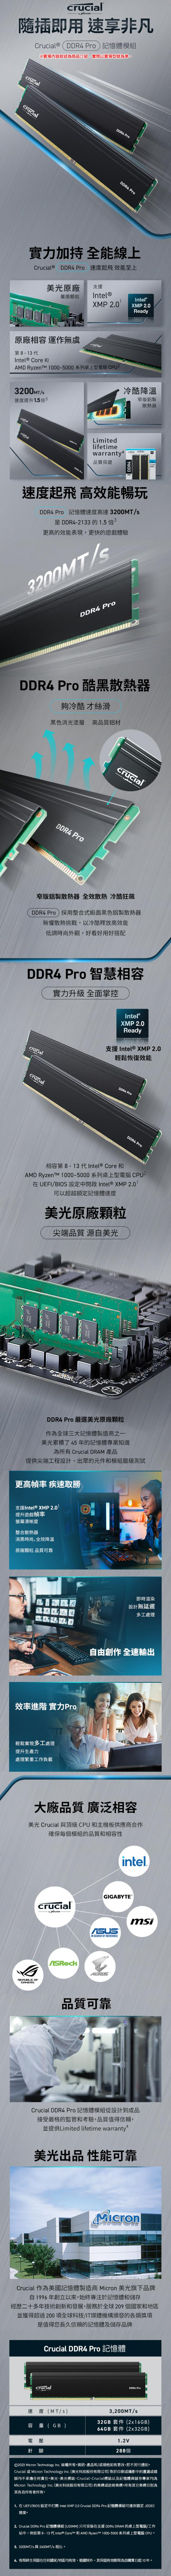 美光Micron Crucial PRO 64G(32G*2) DDR4 3200 電競黑散熱片